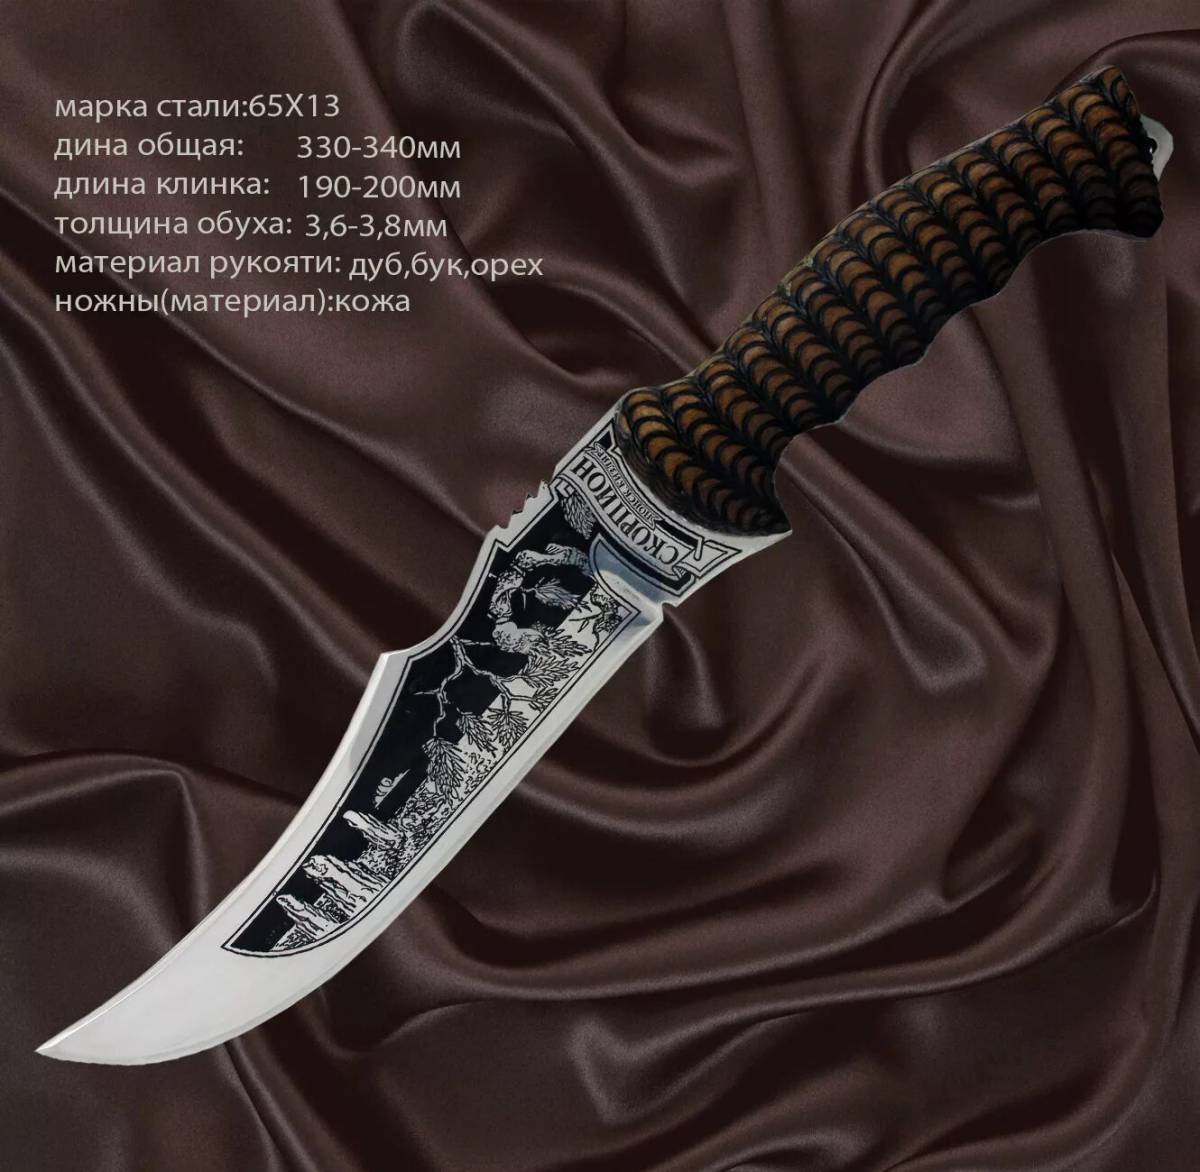 Скорпион нож #35